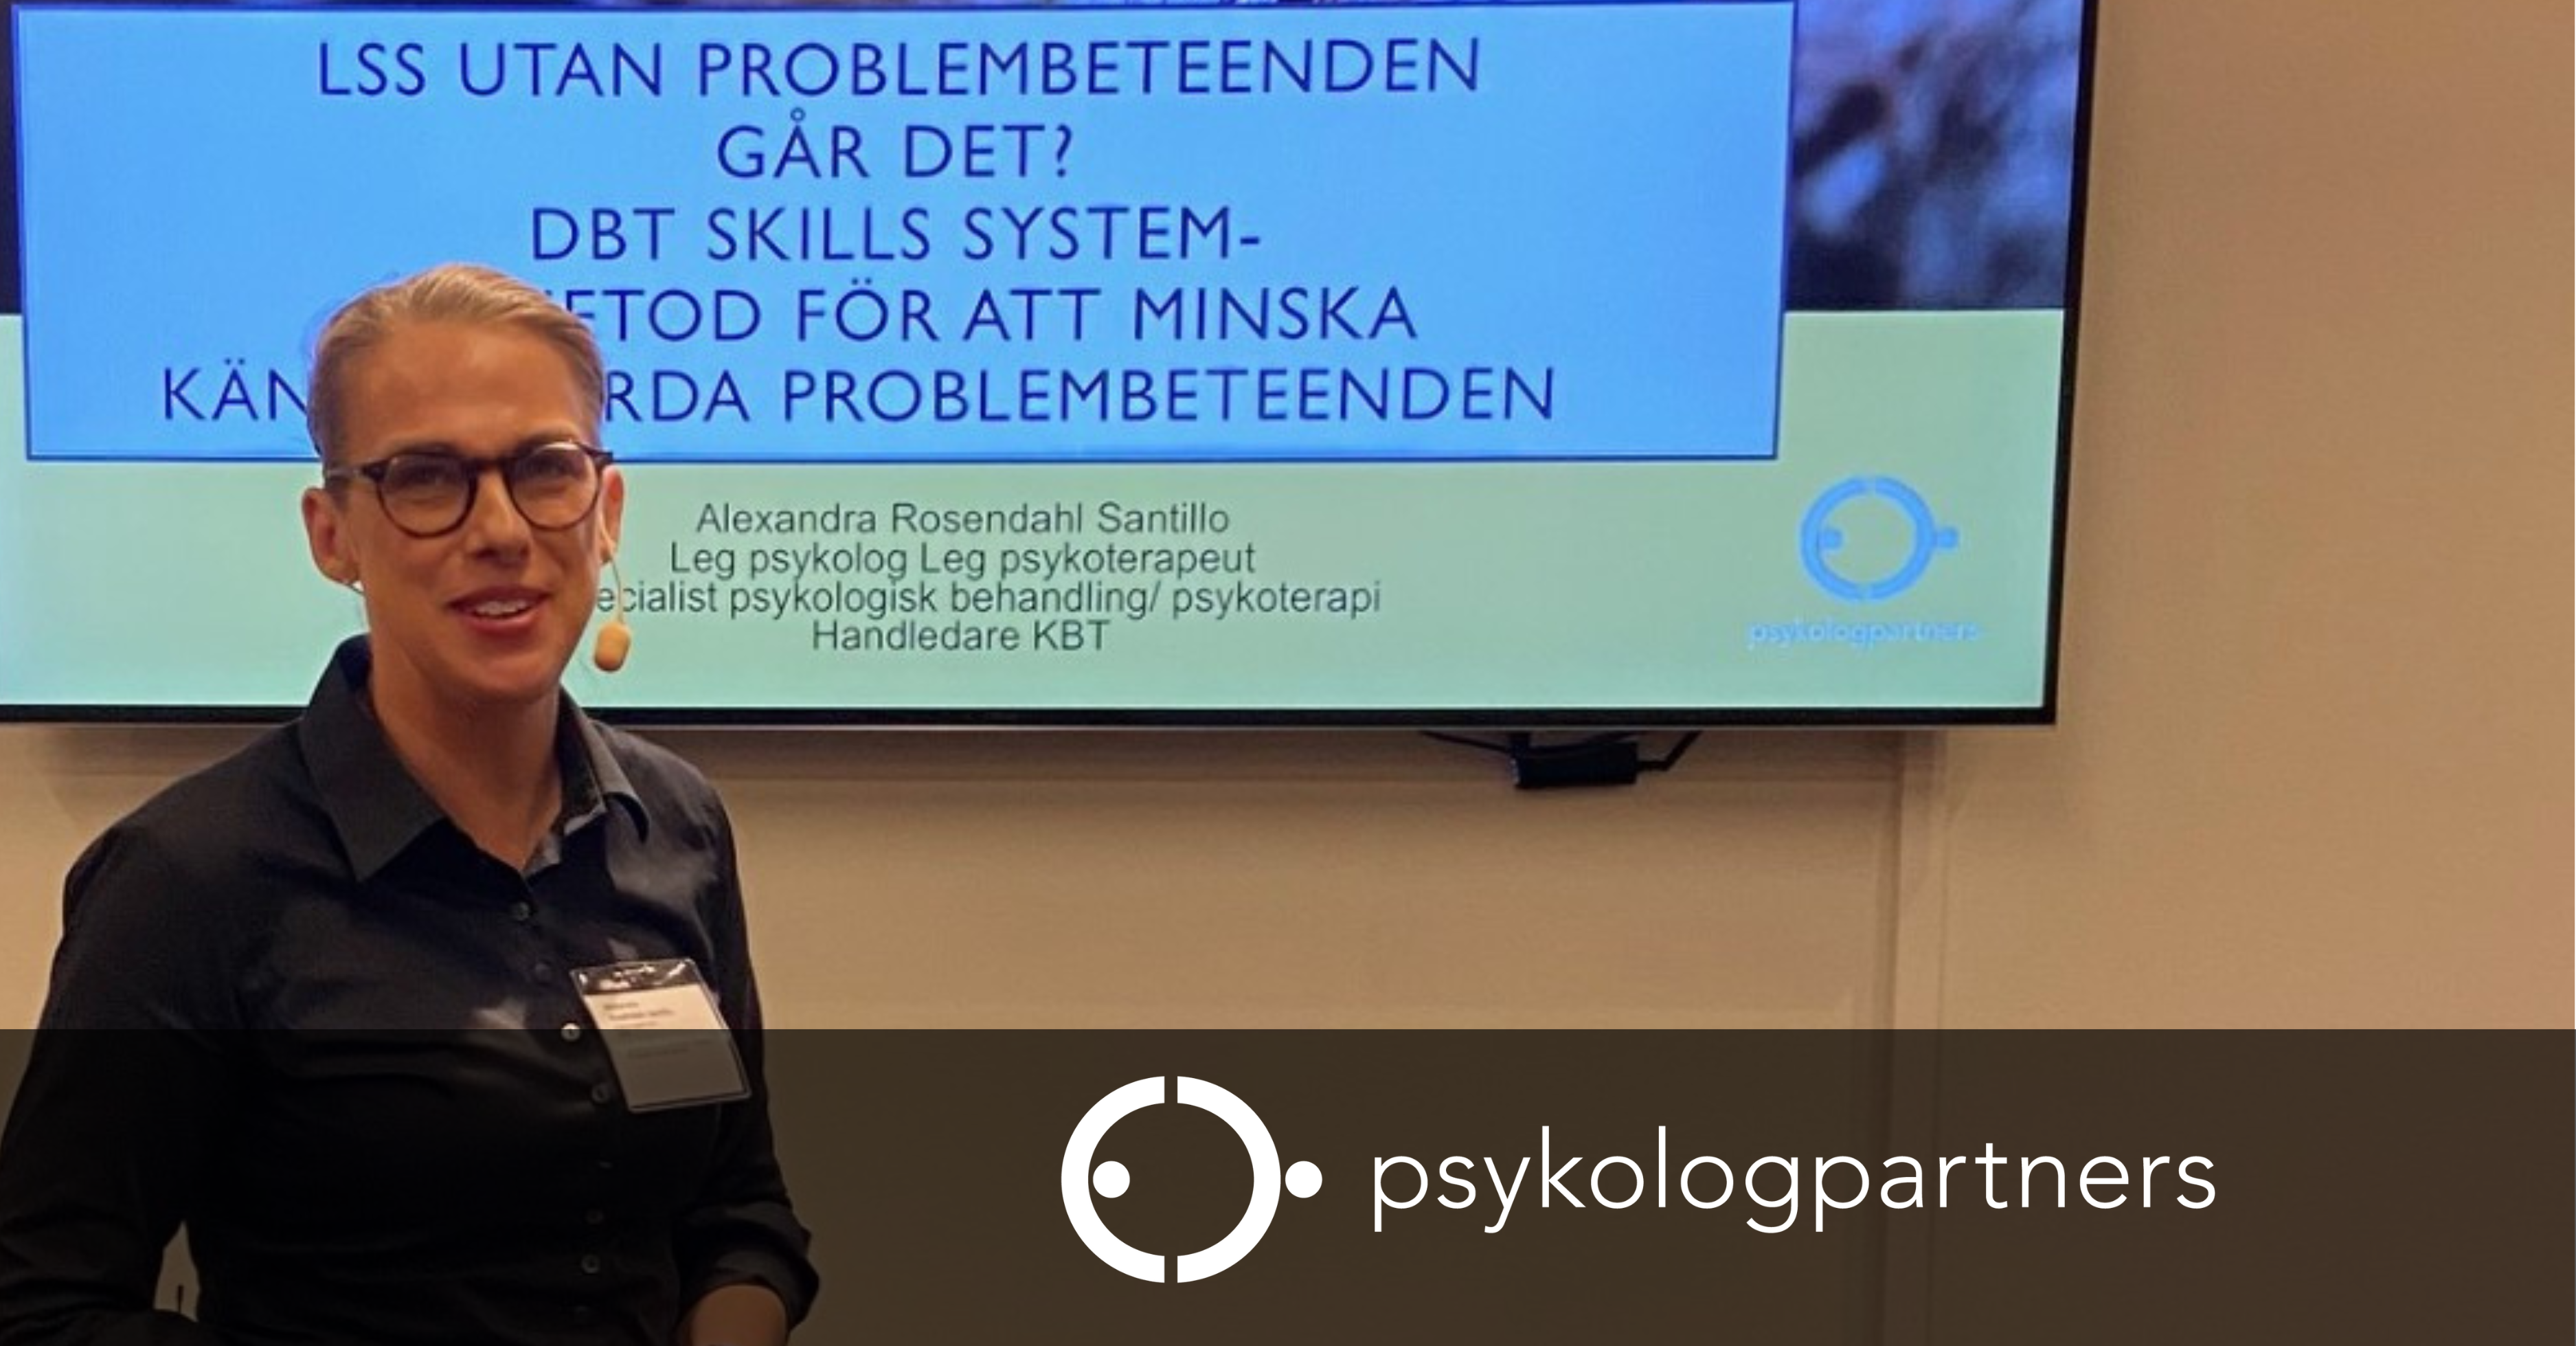 Alexandra Rosendahl Santillo medverkar på konferens med Socialstyrelsen och SKR i sin roll som psykologkonsult på Psykologpartners